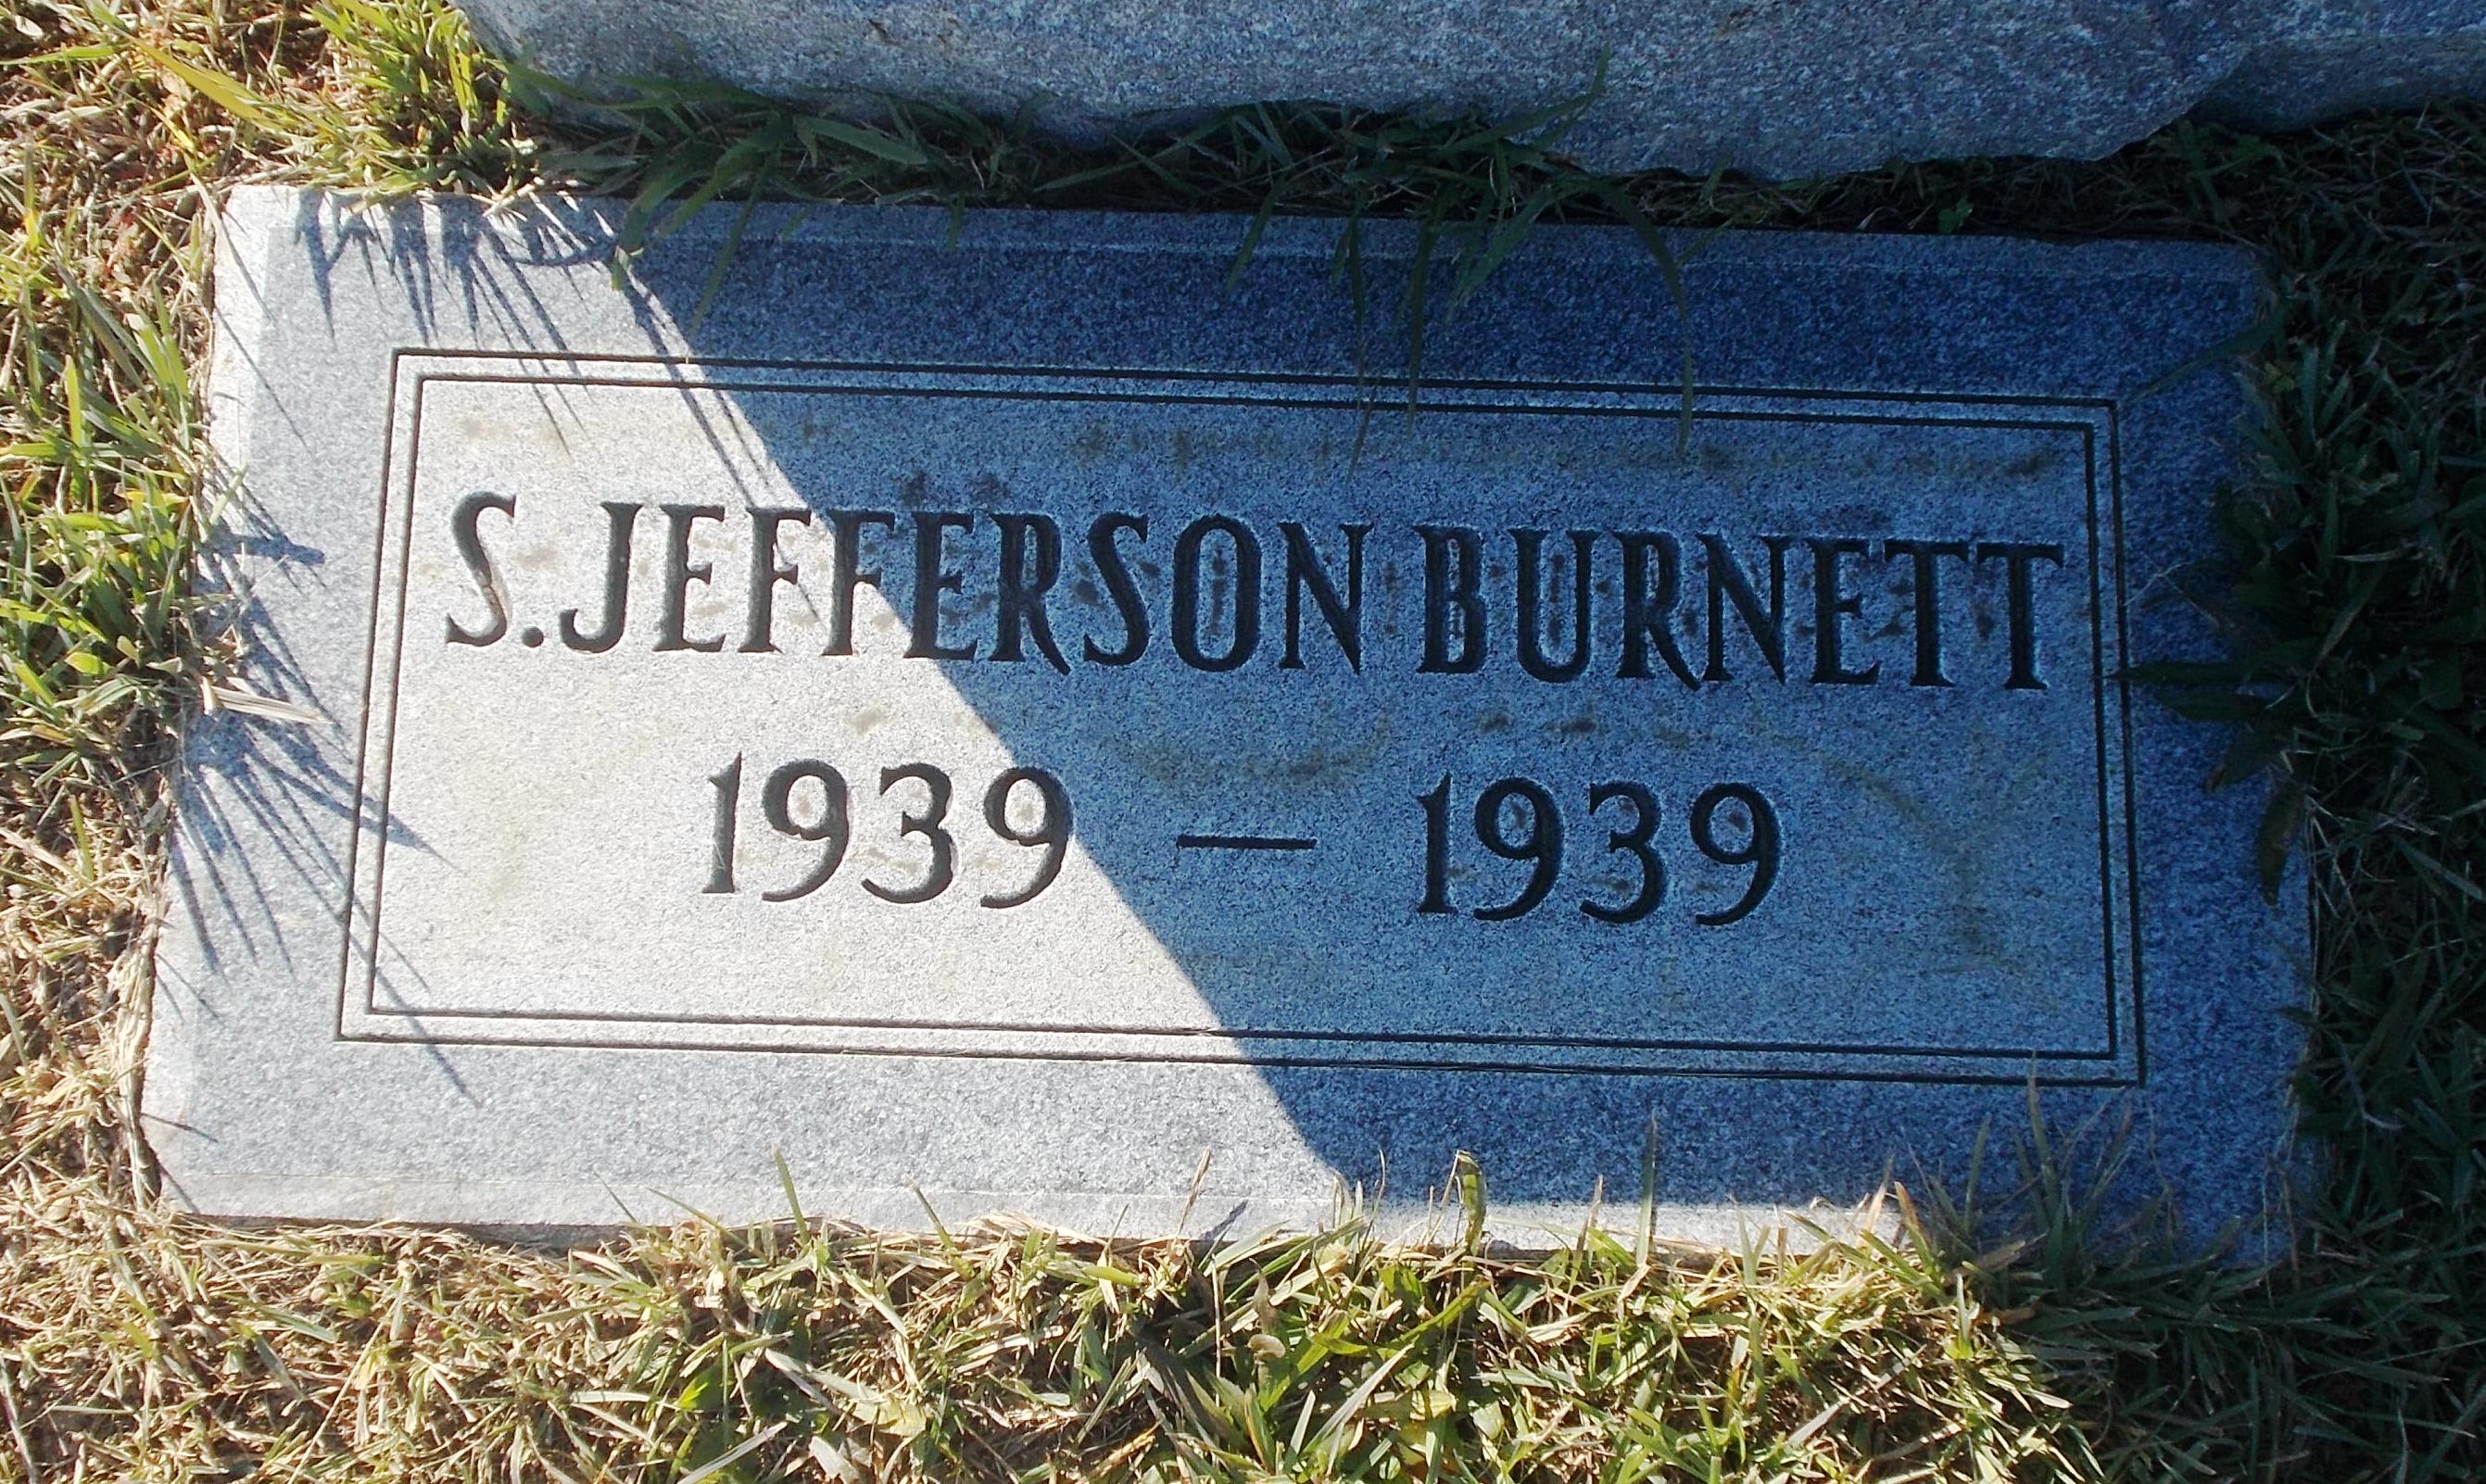 S Jefferson Burnett